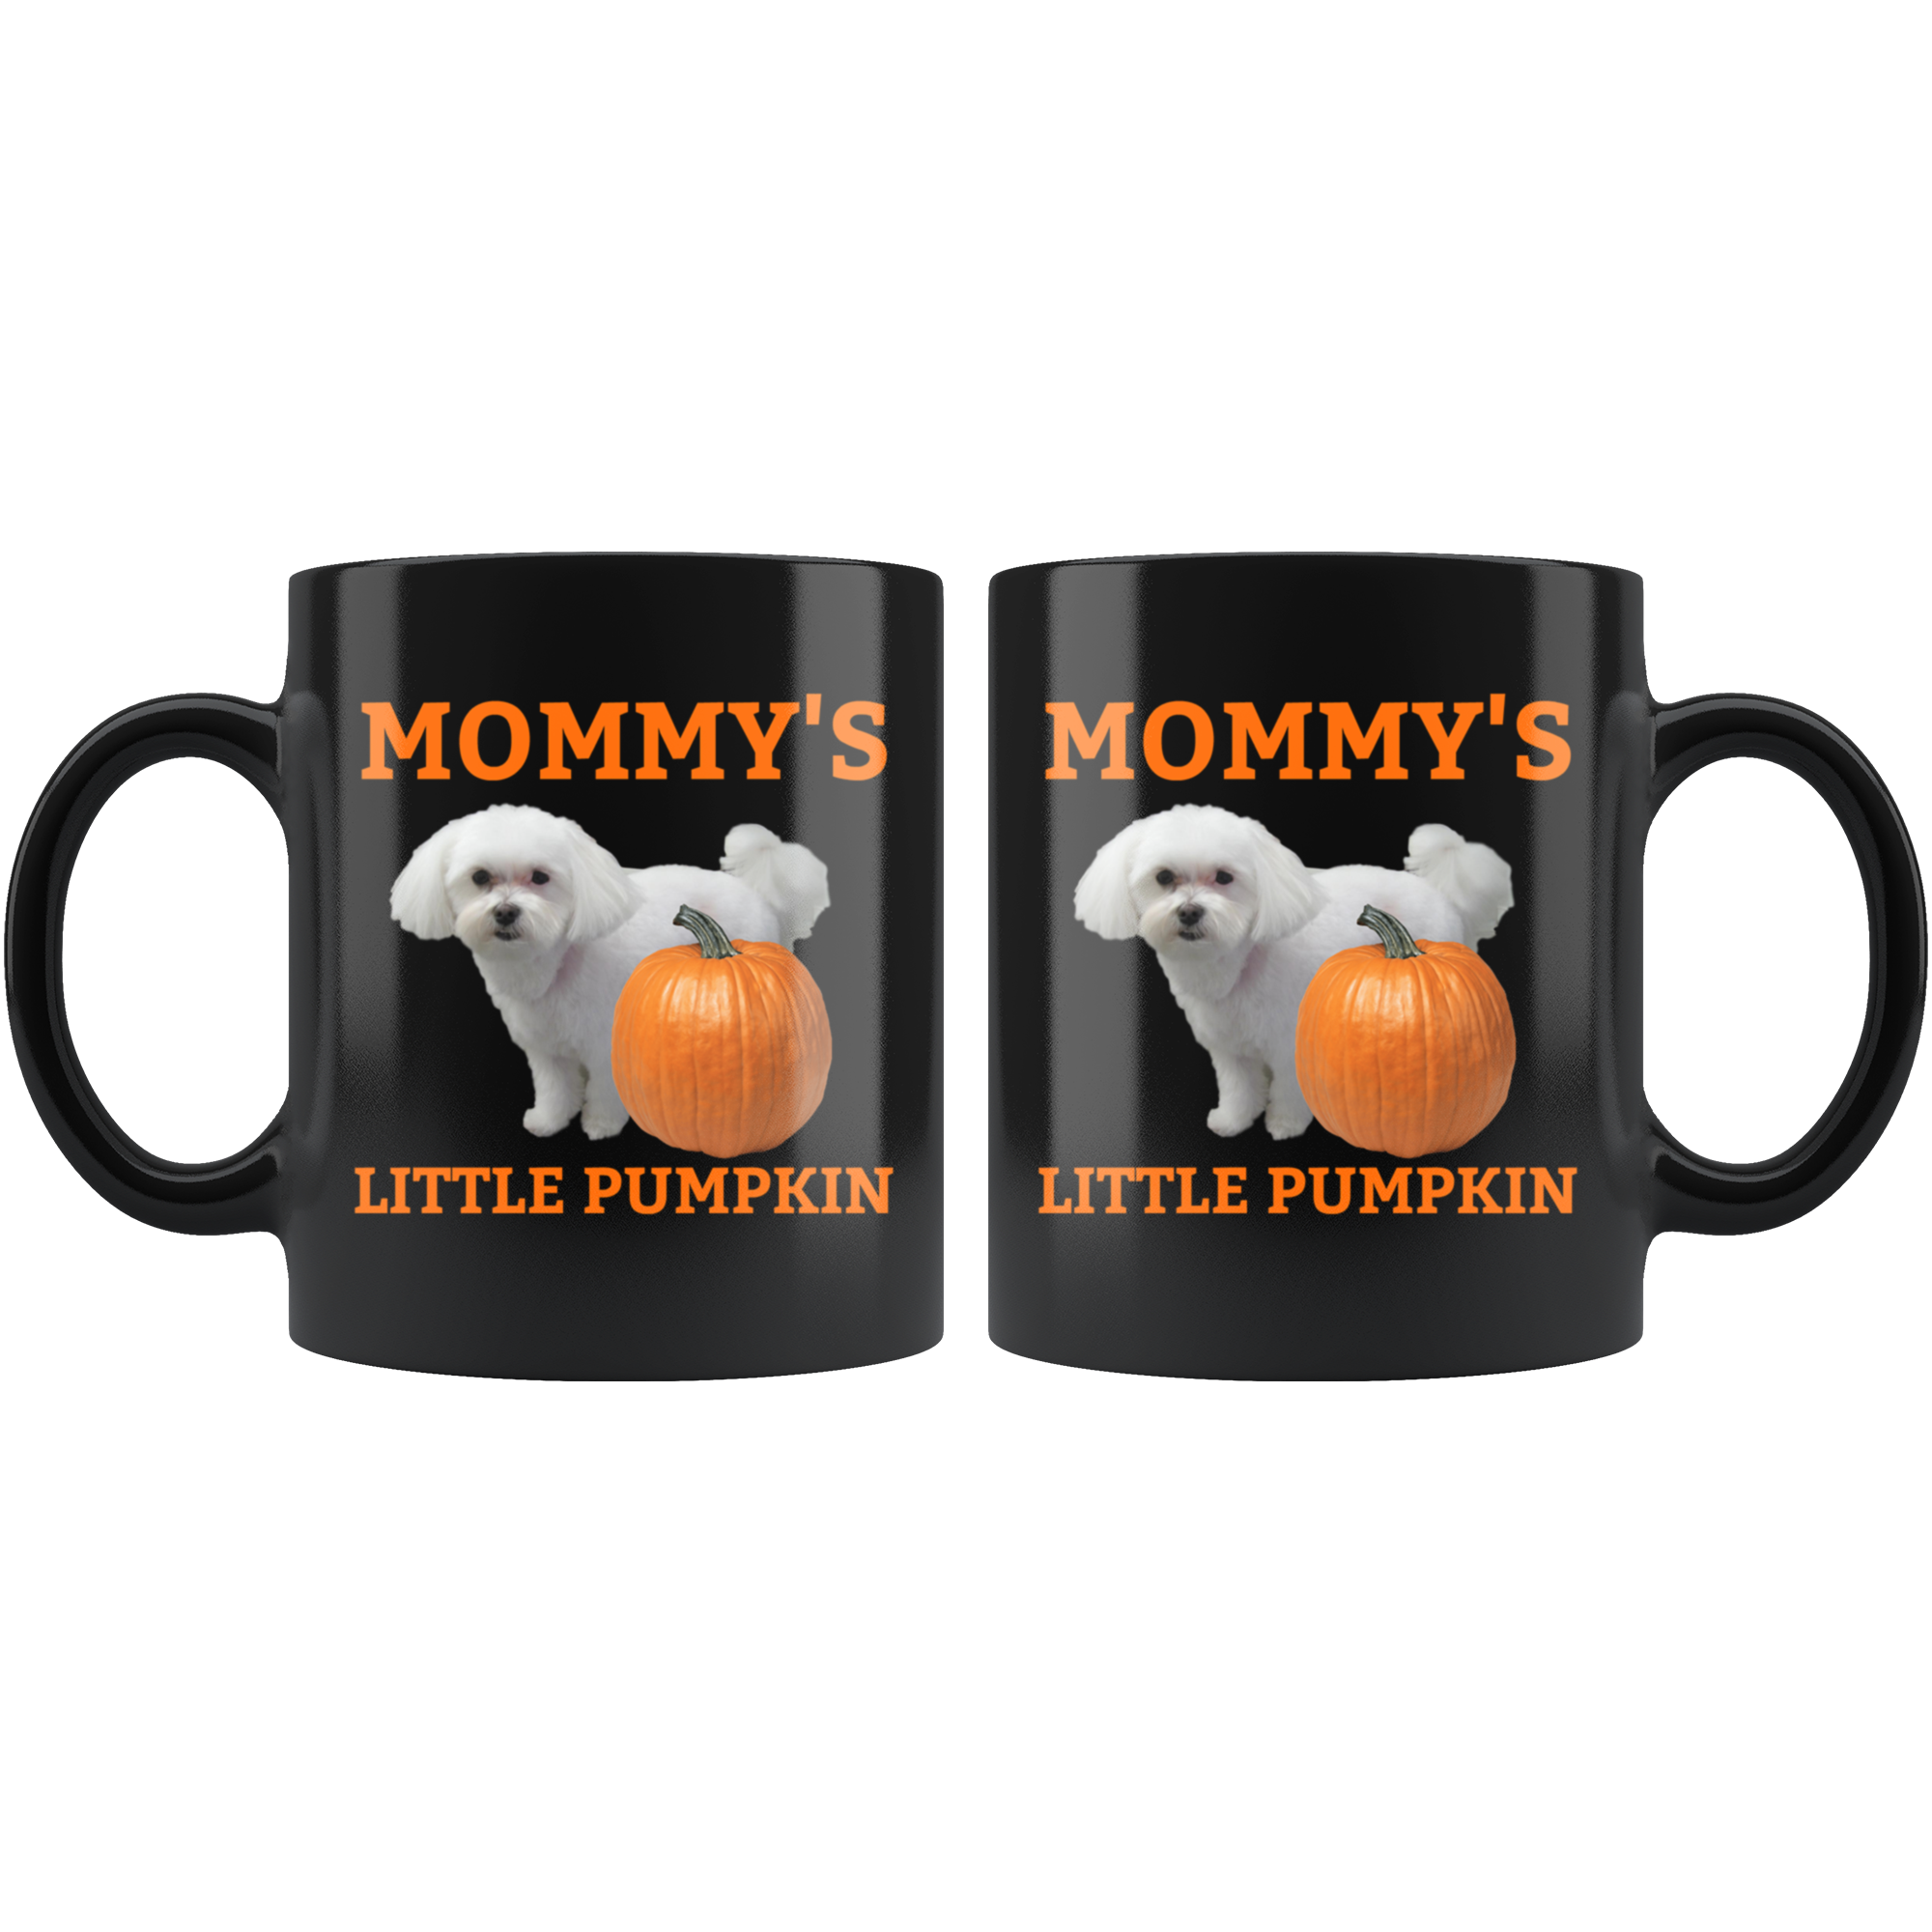 Mommy's Little Pumpkin Mug - Maltese